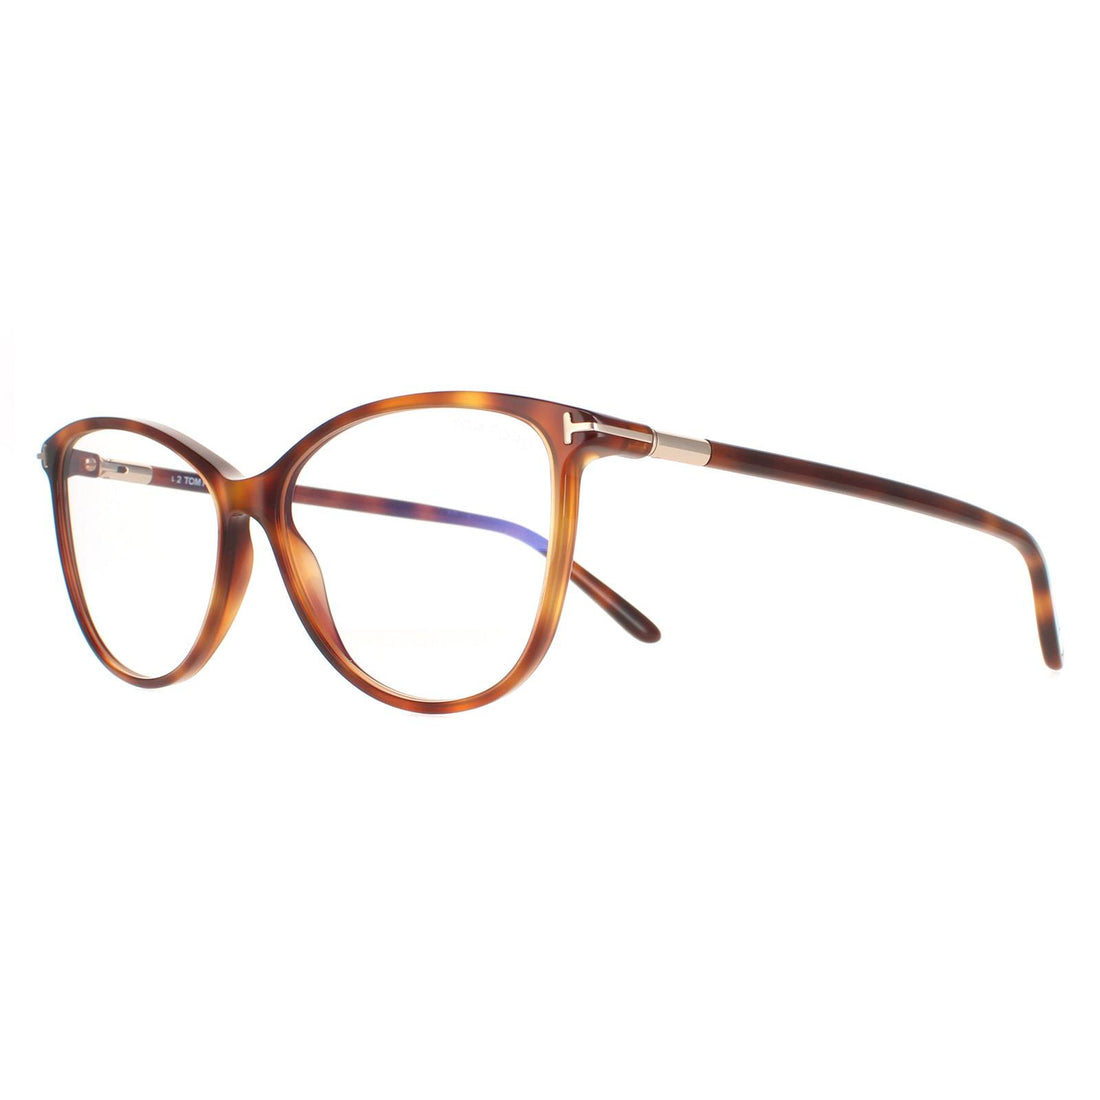 Tom Ford Glasses Frames FT5616-B 053 Blonde Havana Women